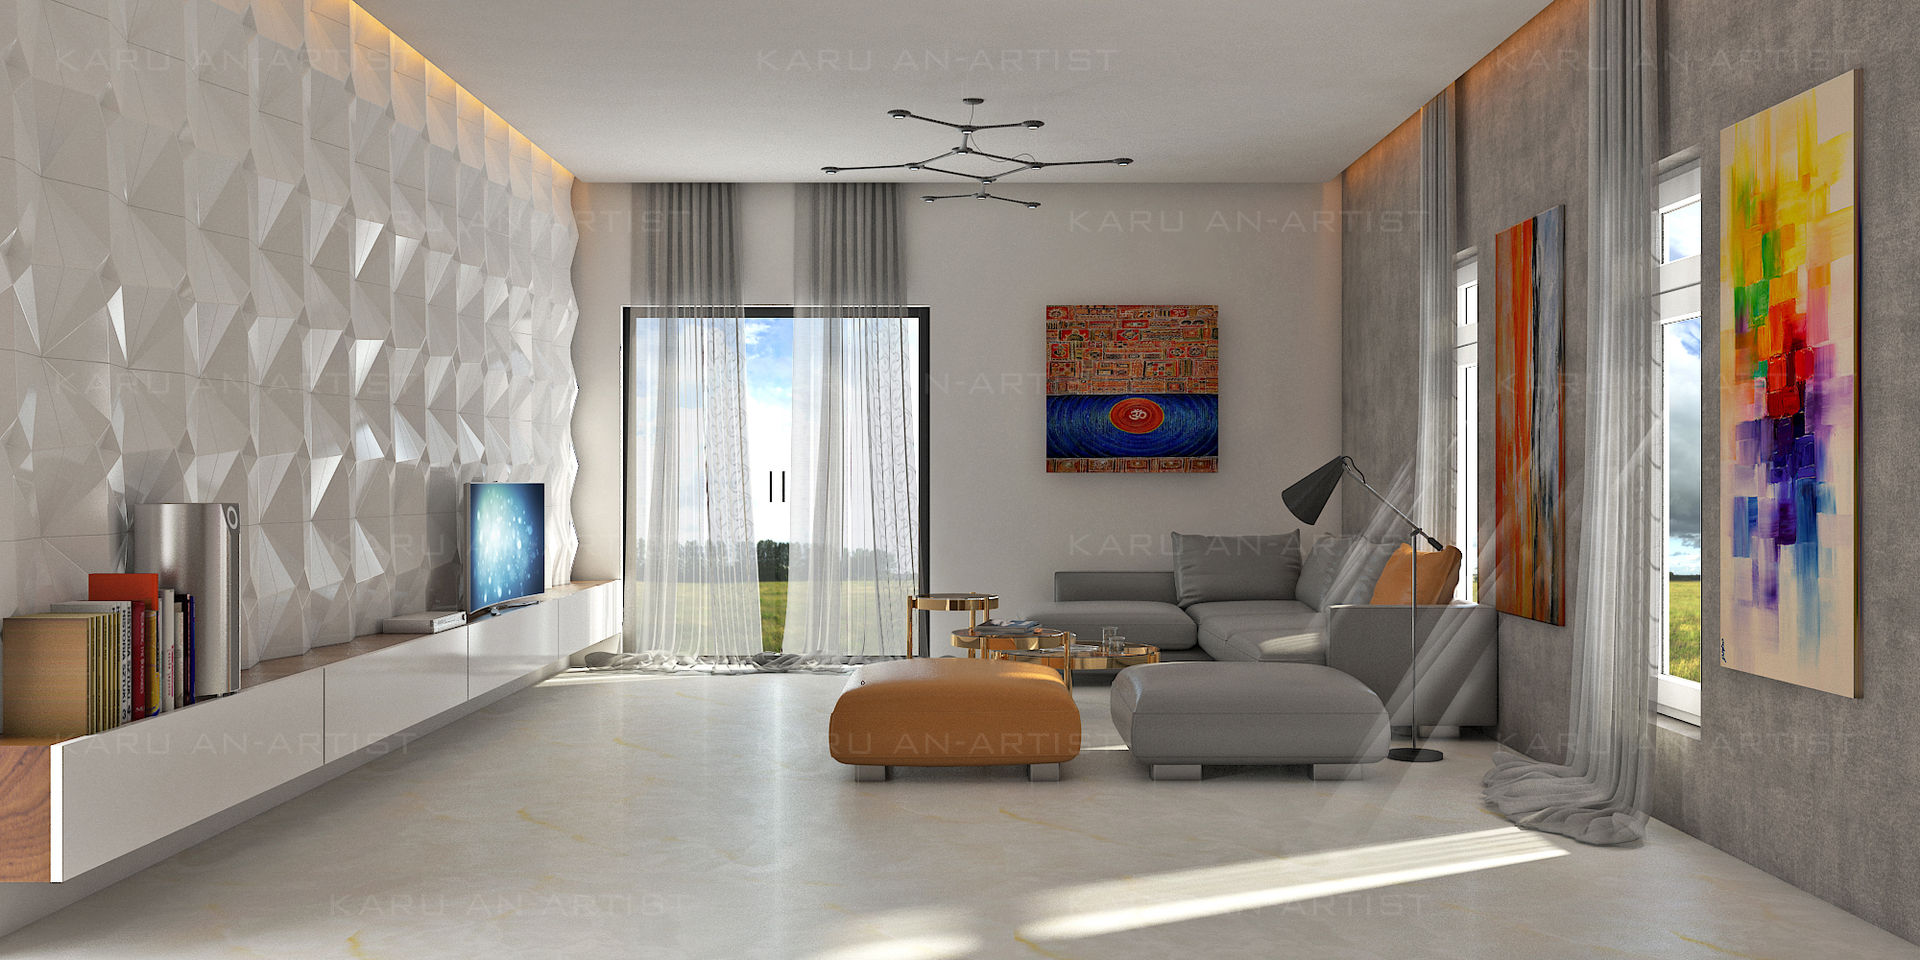 A Modern Living Room, KARU AN ARTIST KARU AN ARTIST Salas de estilo moderno